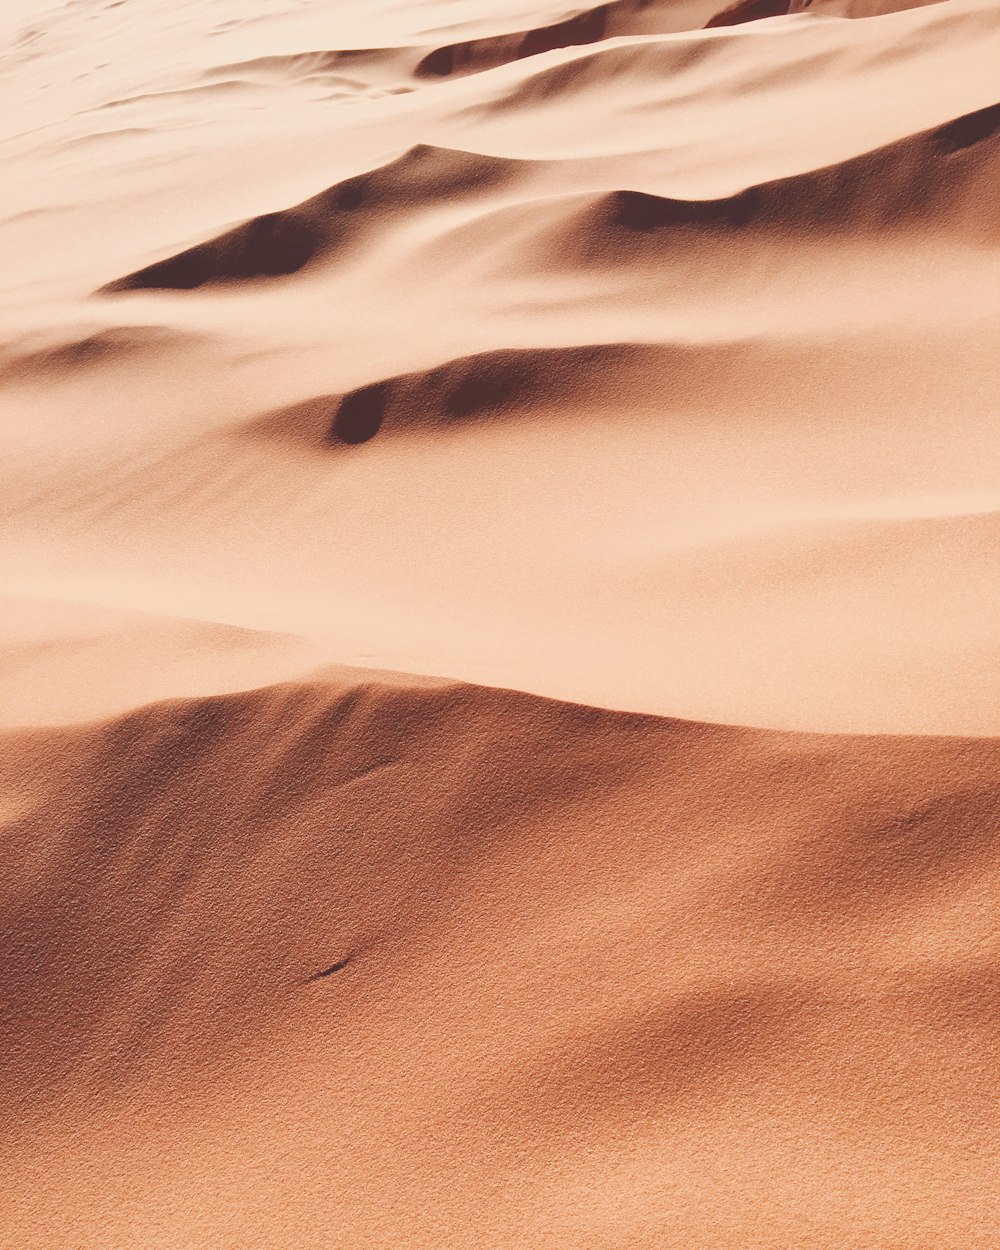 photo of desert sand